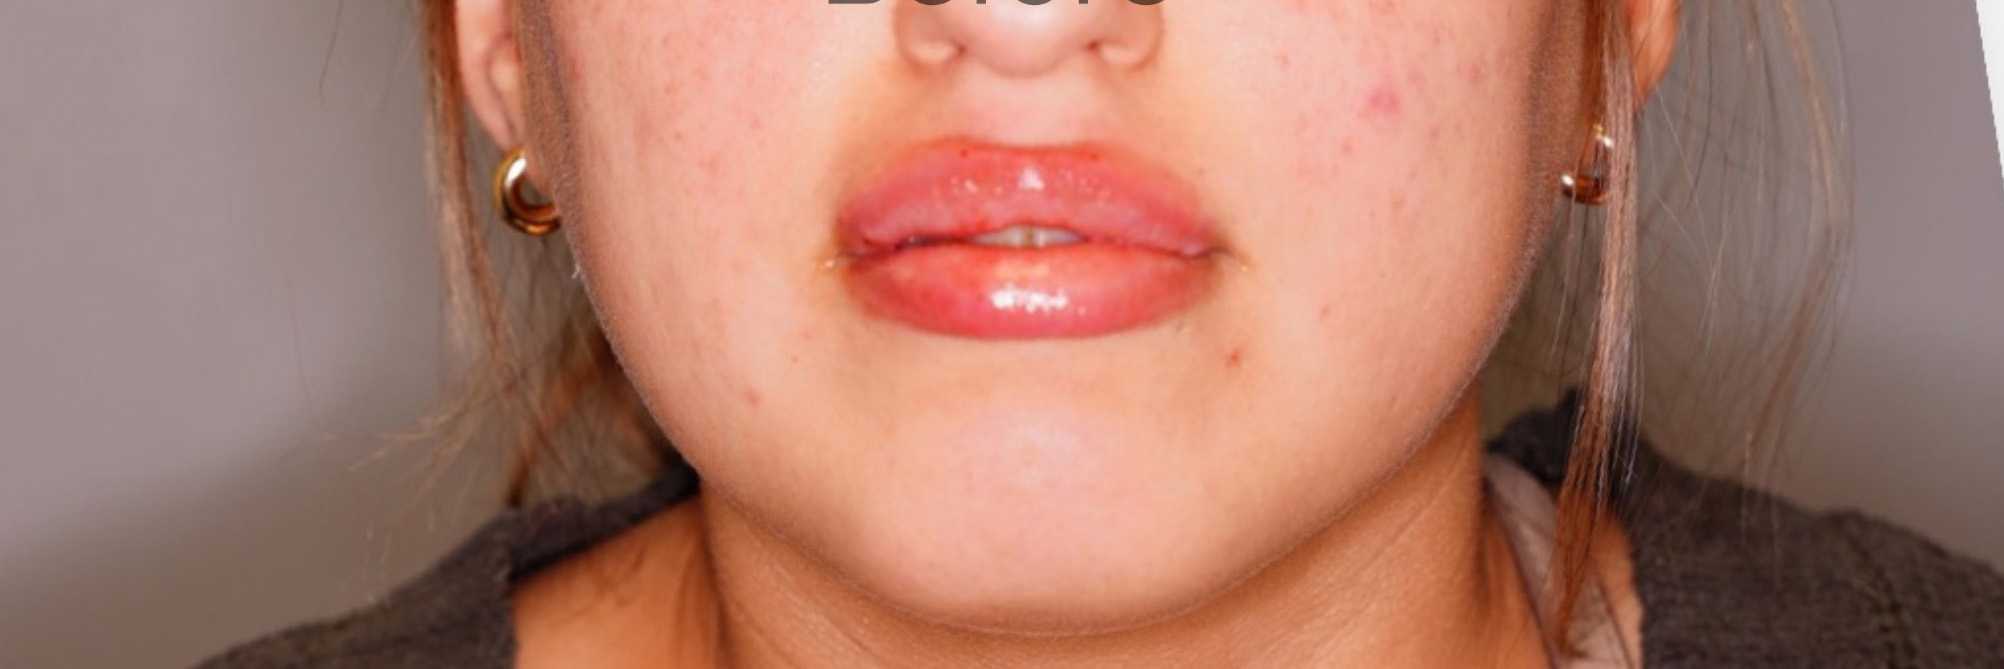 Lip Lift Patient Photo - Case 6038 - after view-0